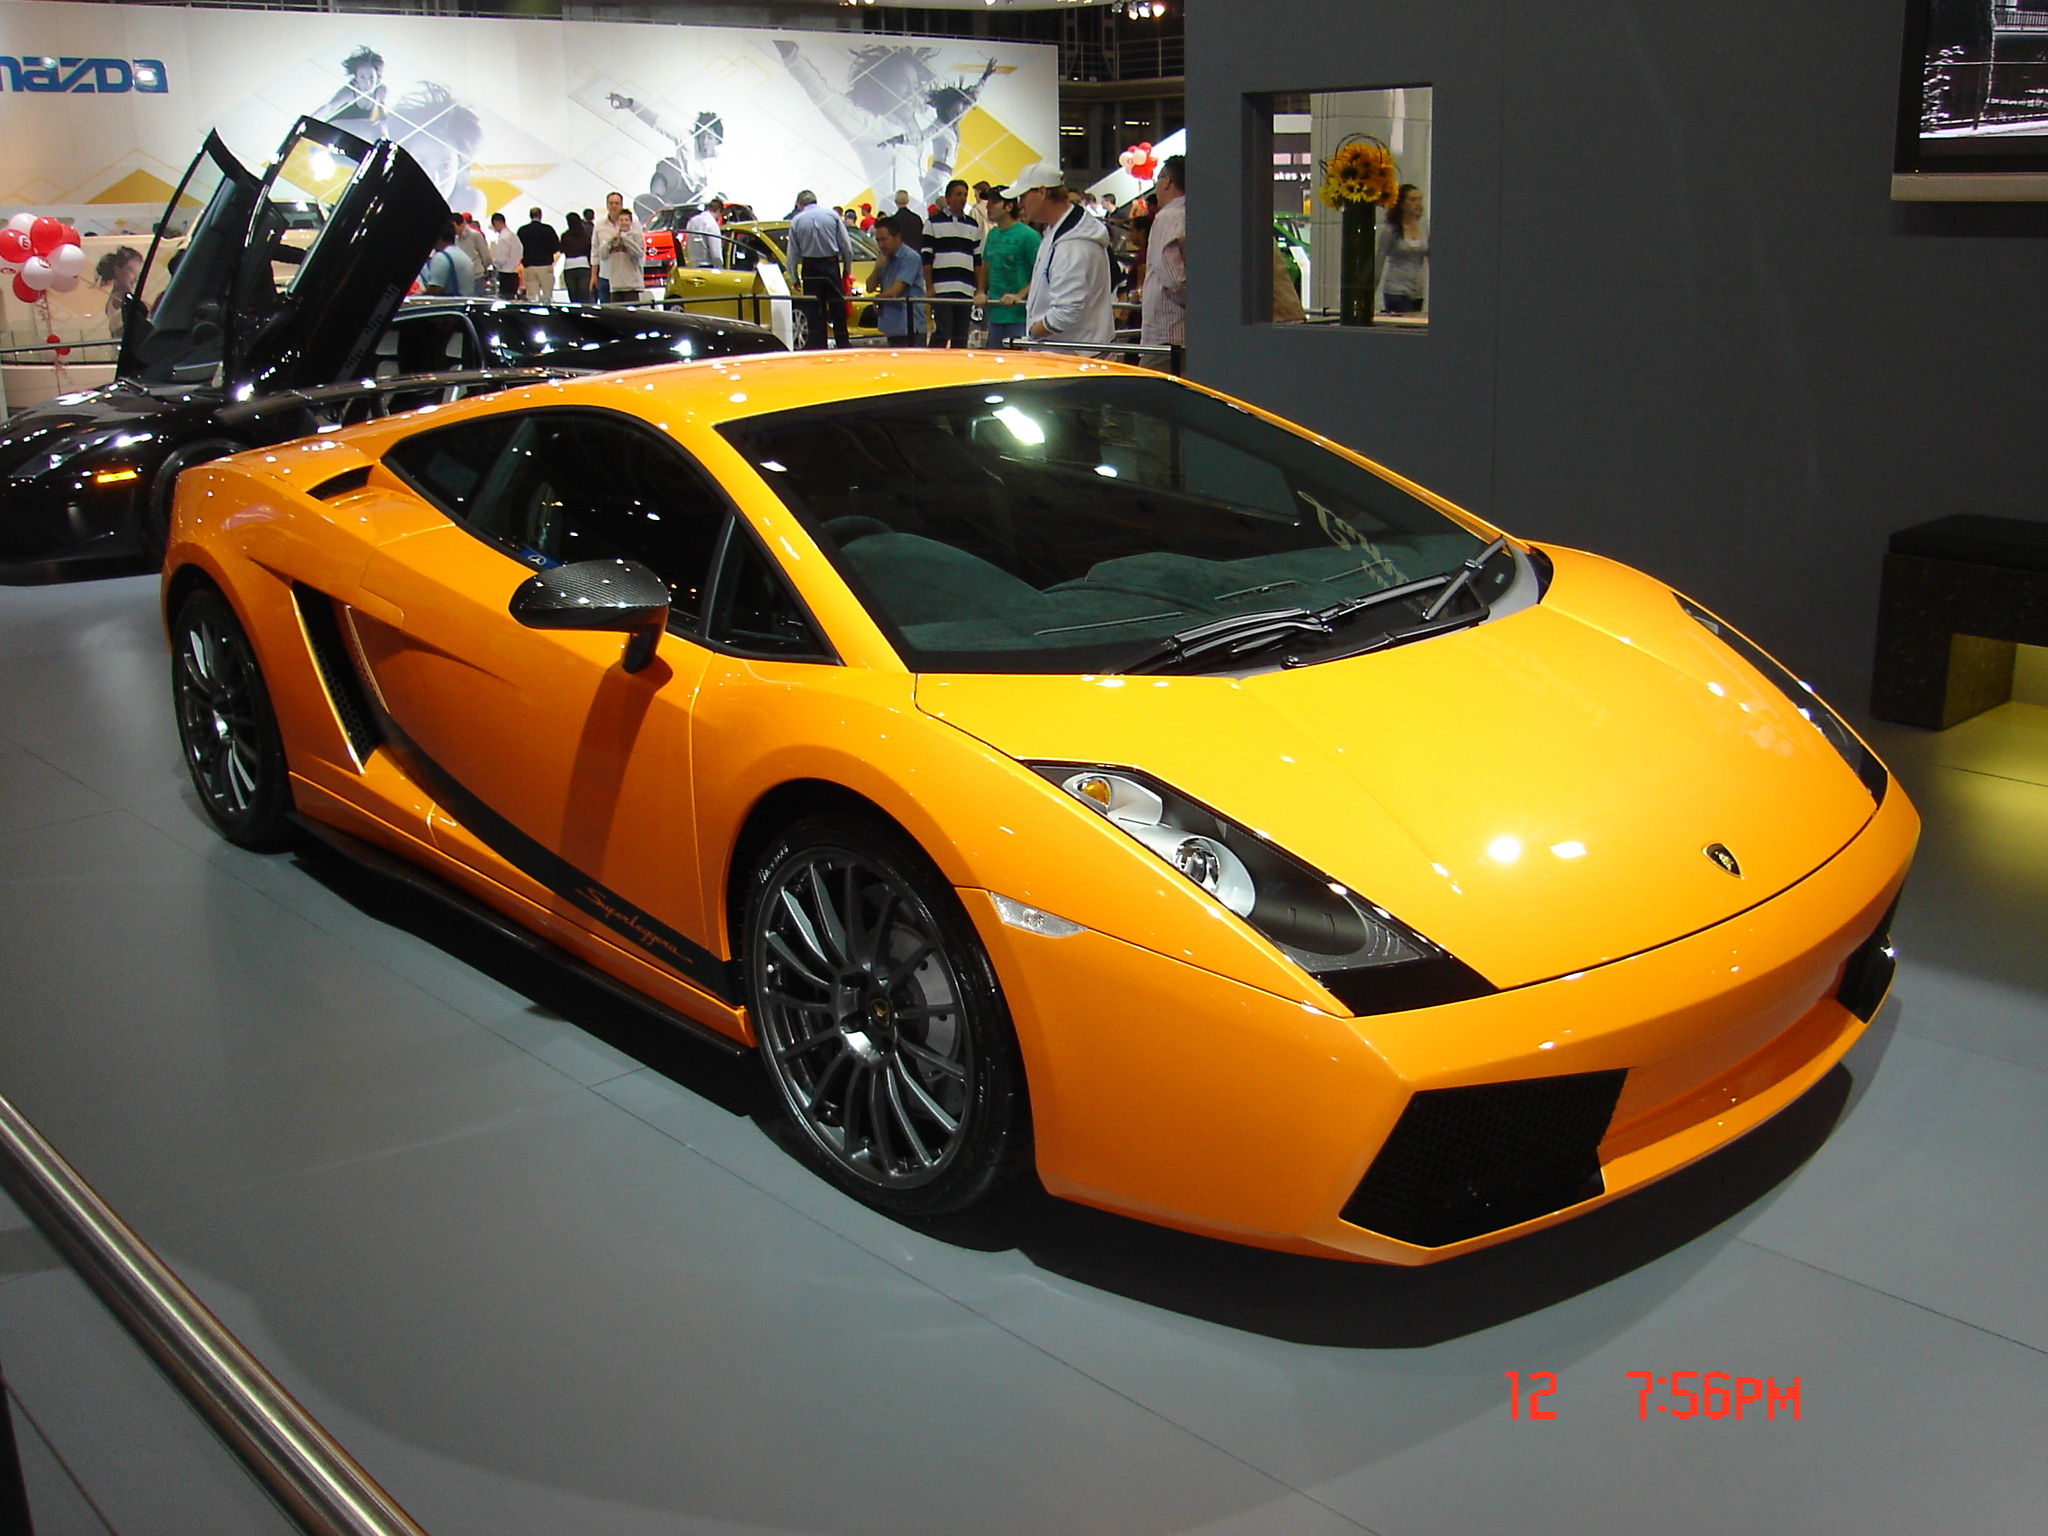 Lamborghini Gallardo Superleggera HQ Pictures